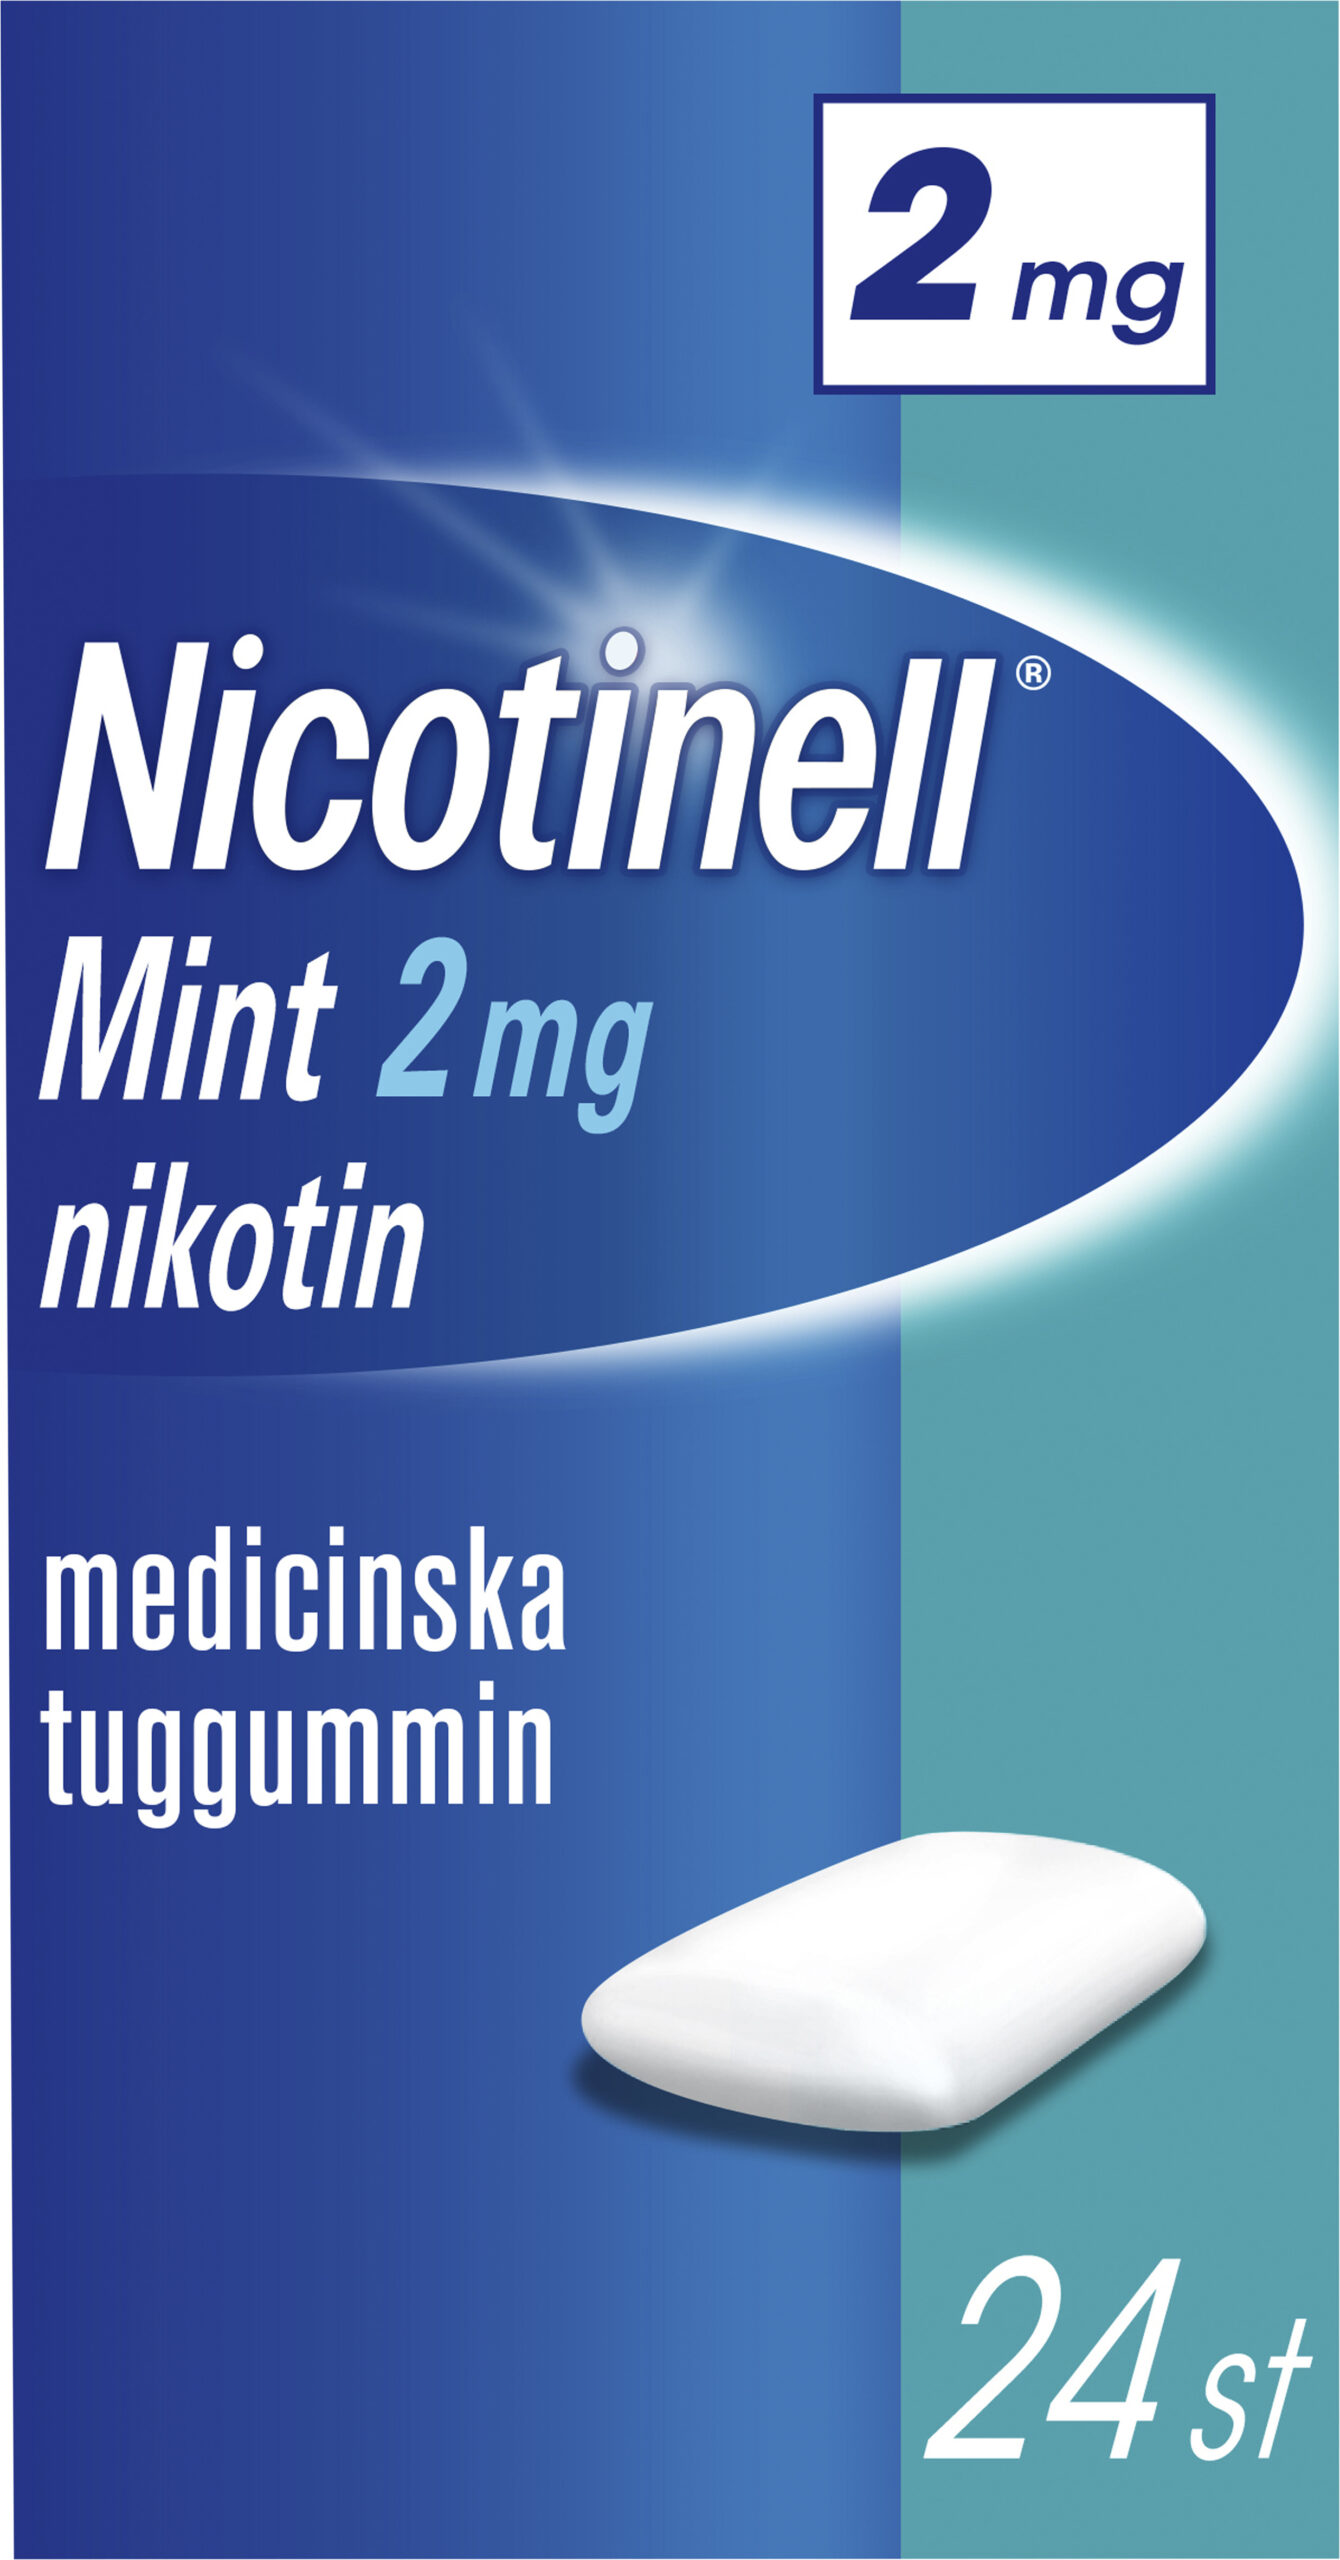 Nicotinell Mint Medicinskt tuggummi 2mg Blister, 24tuggummin